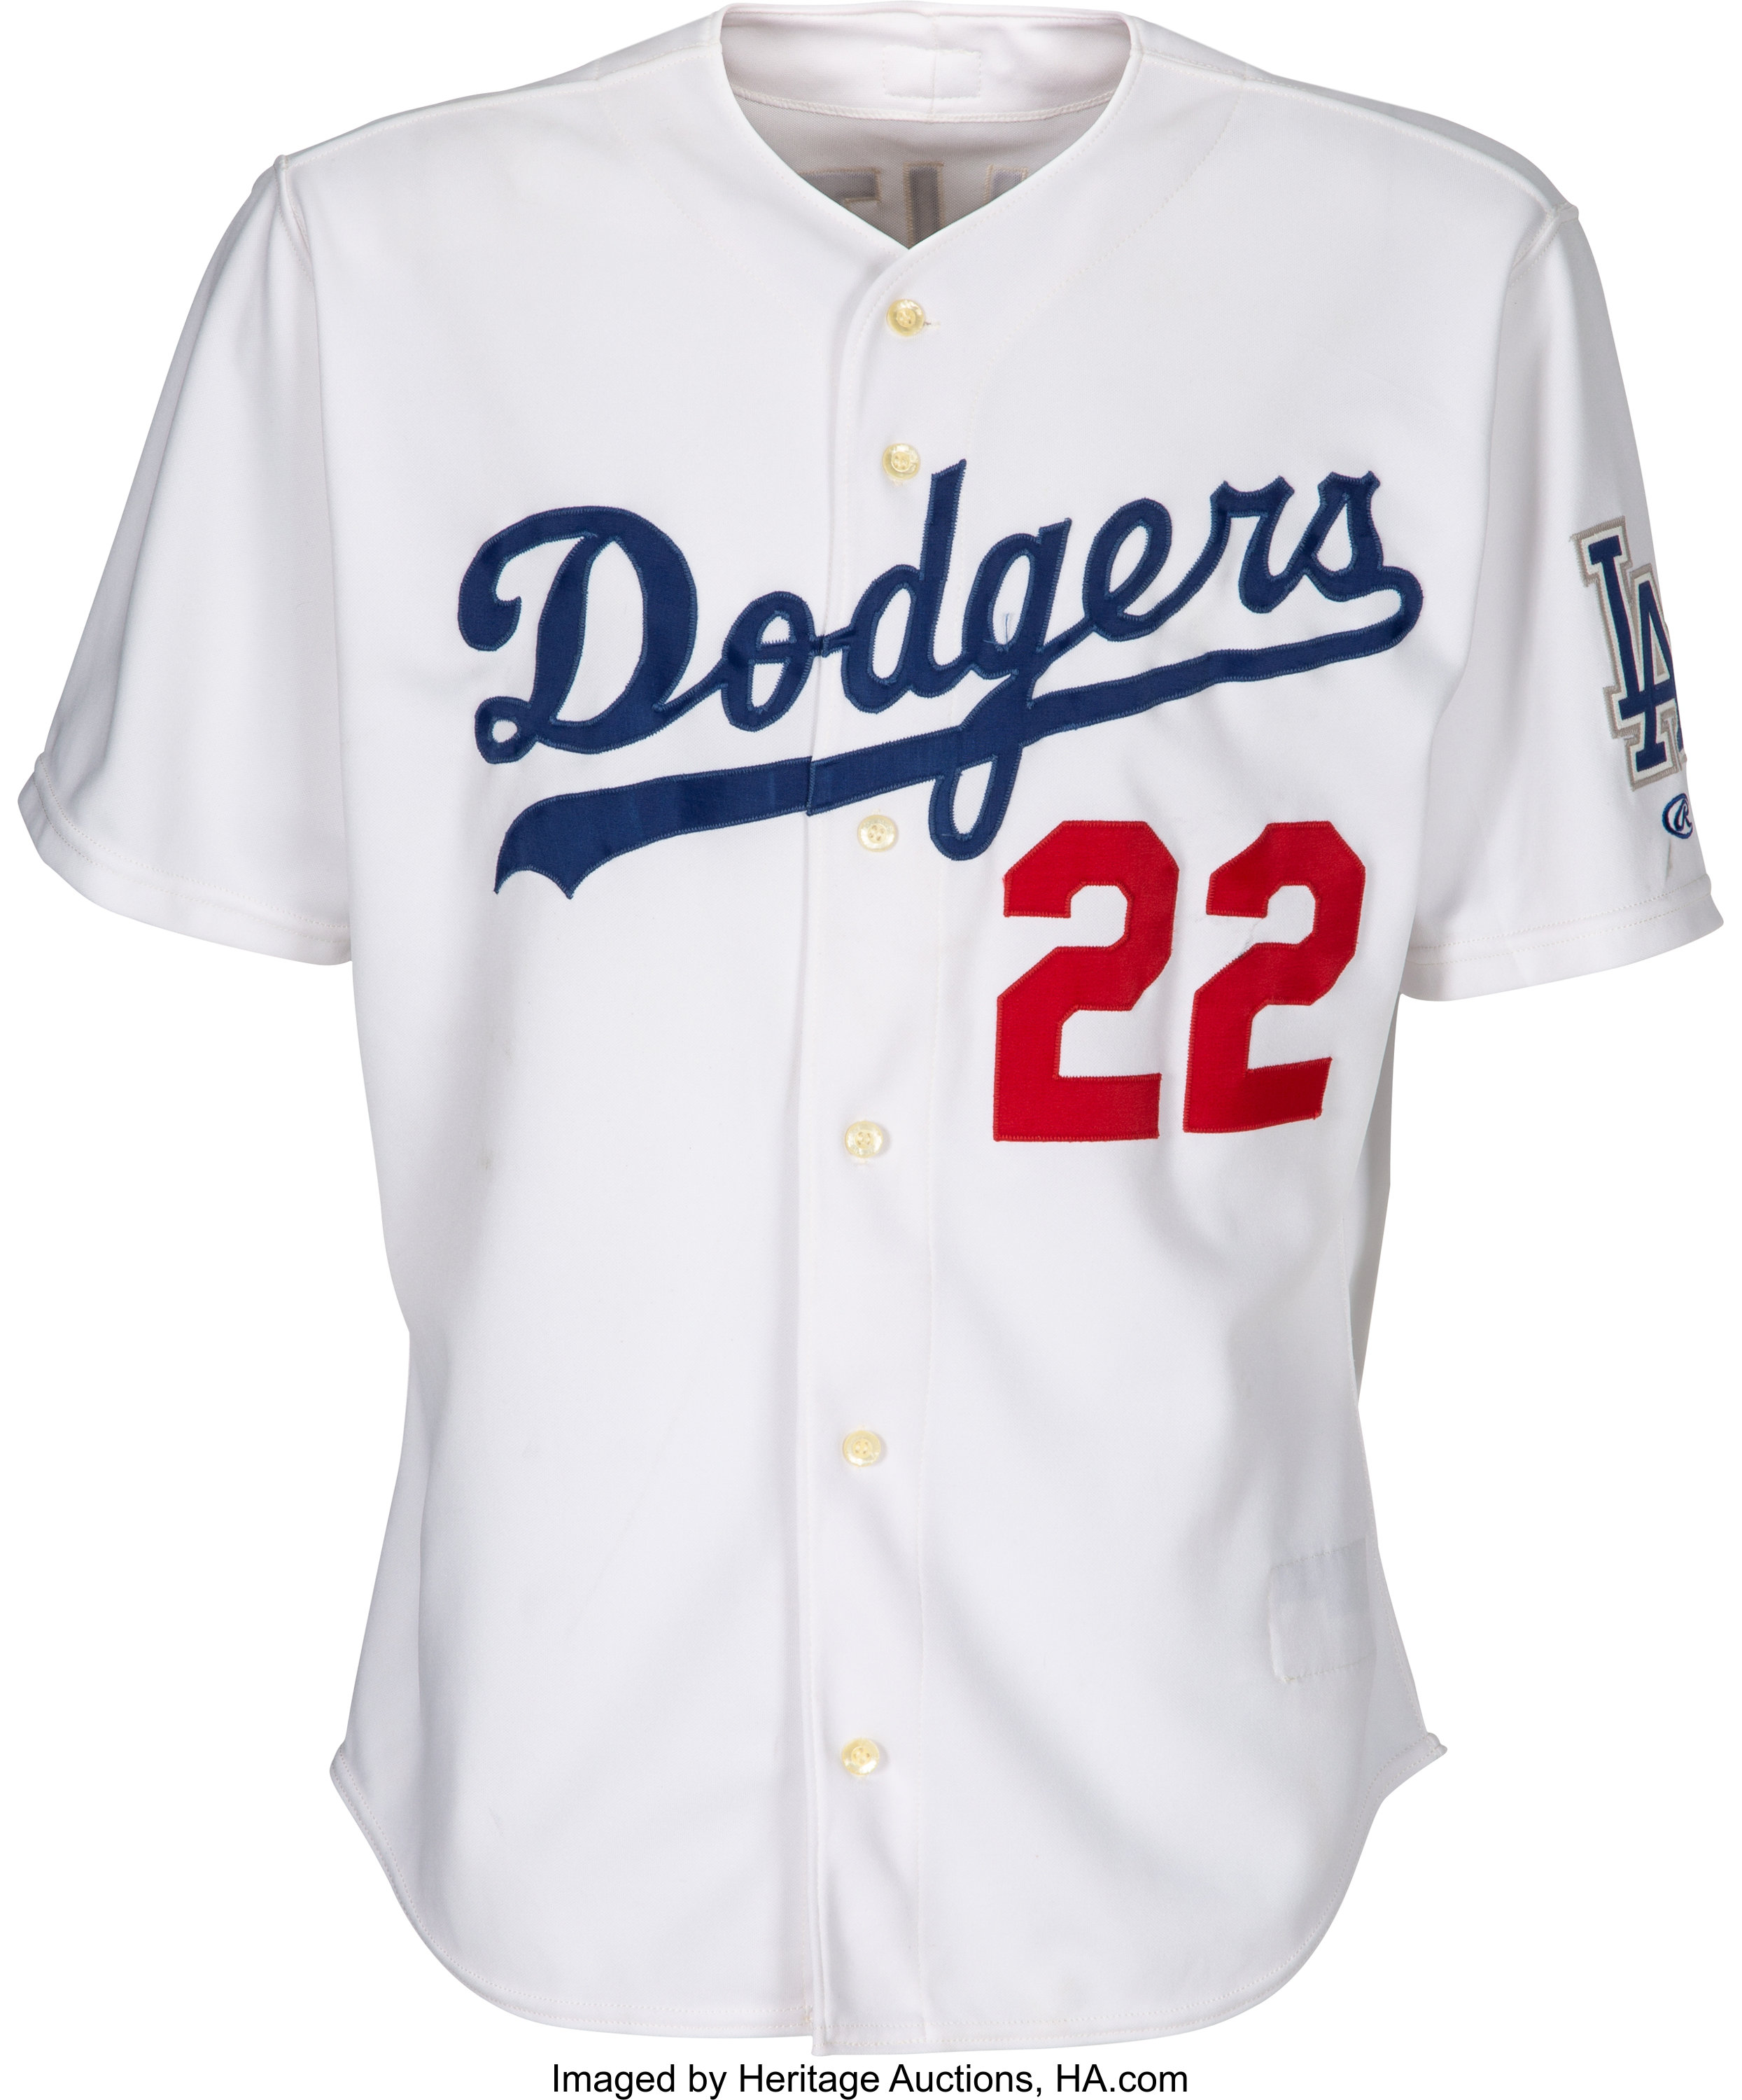 Los Angeles Dodgers Home Uniform Tweak, Since the Dodgers g…